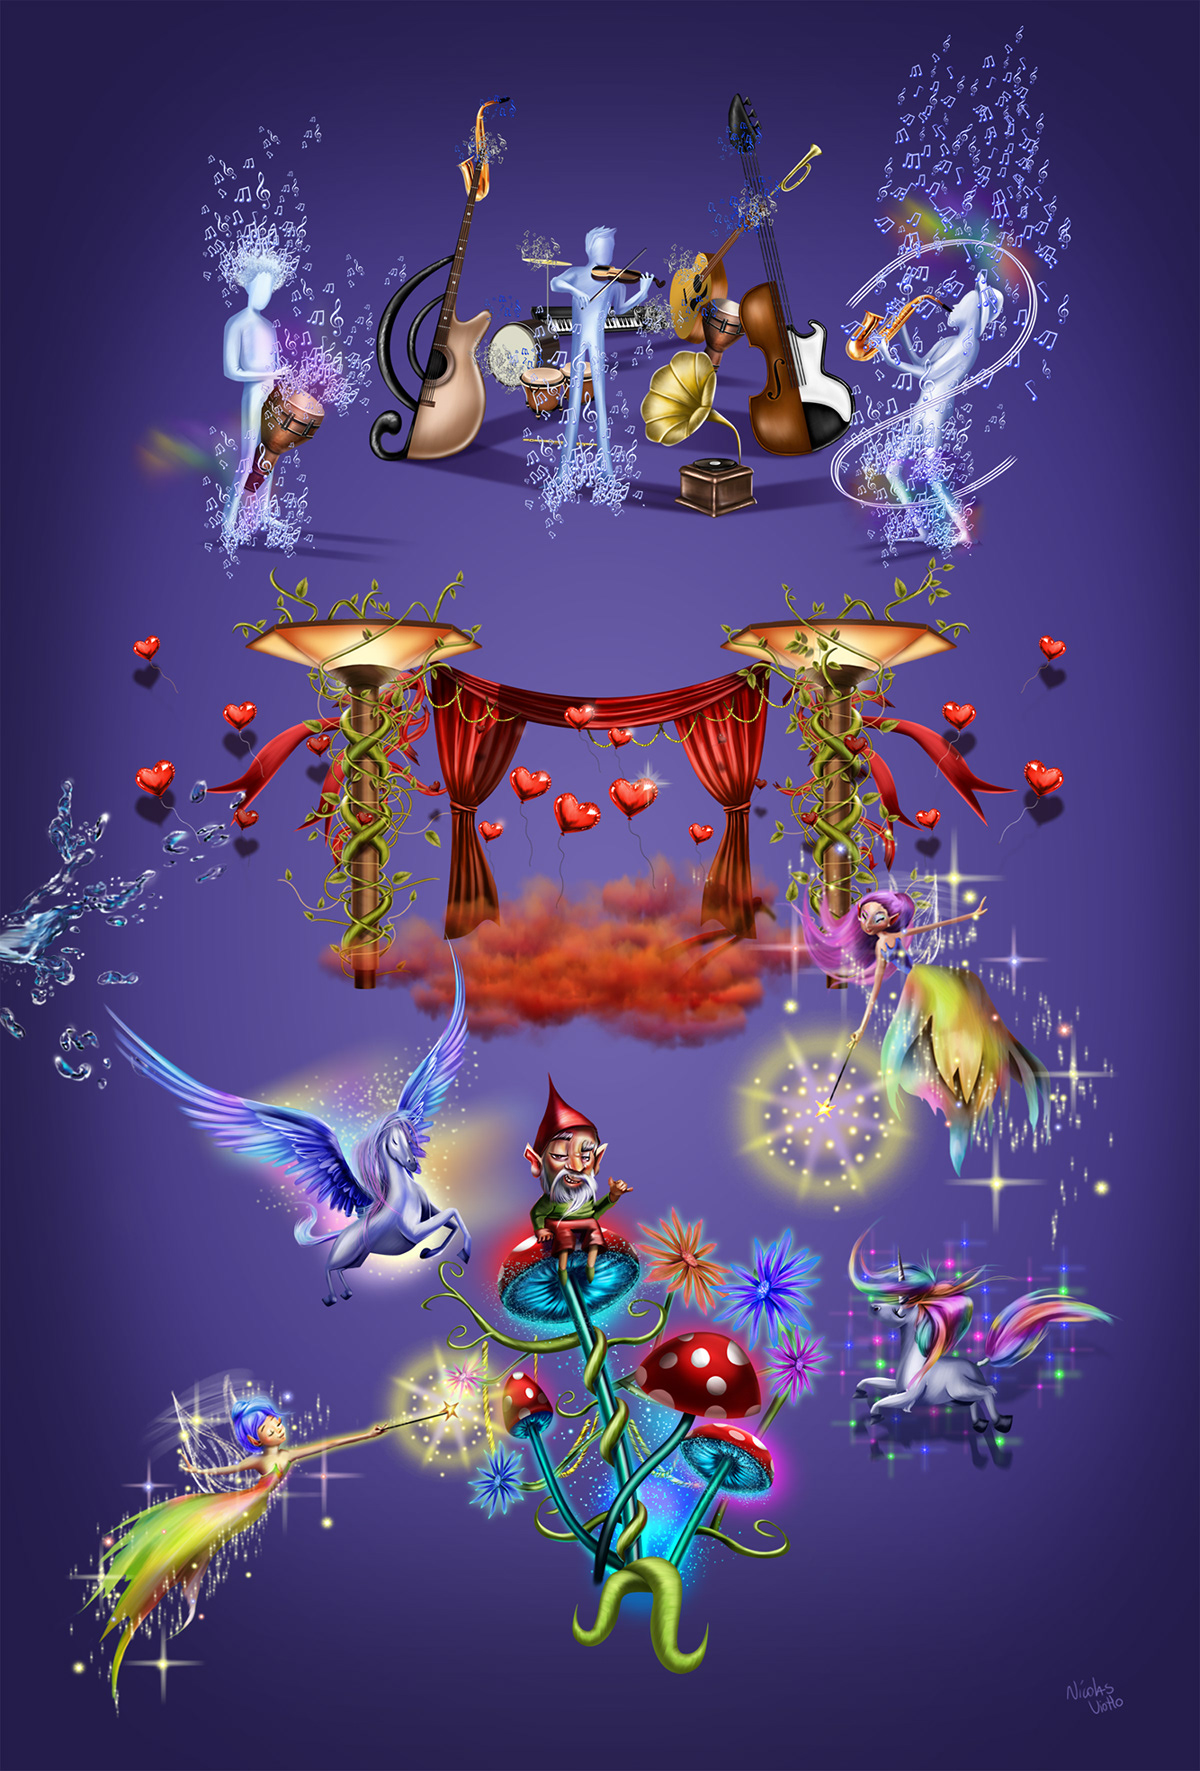 ILLUSTRATION  fairy tales Conto de fadas Ilustração Nicolas Viotto  secret planet planeta secreto campanha campaign ad